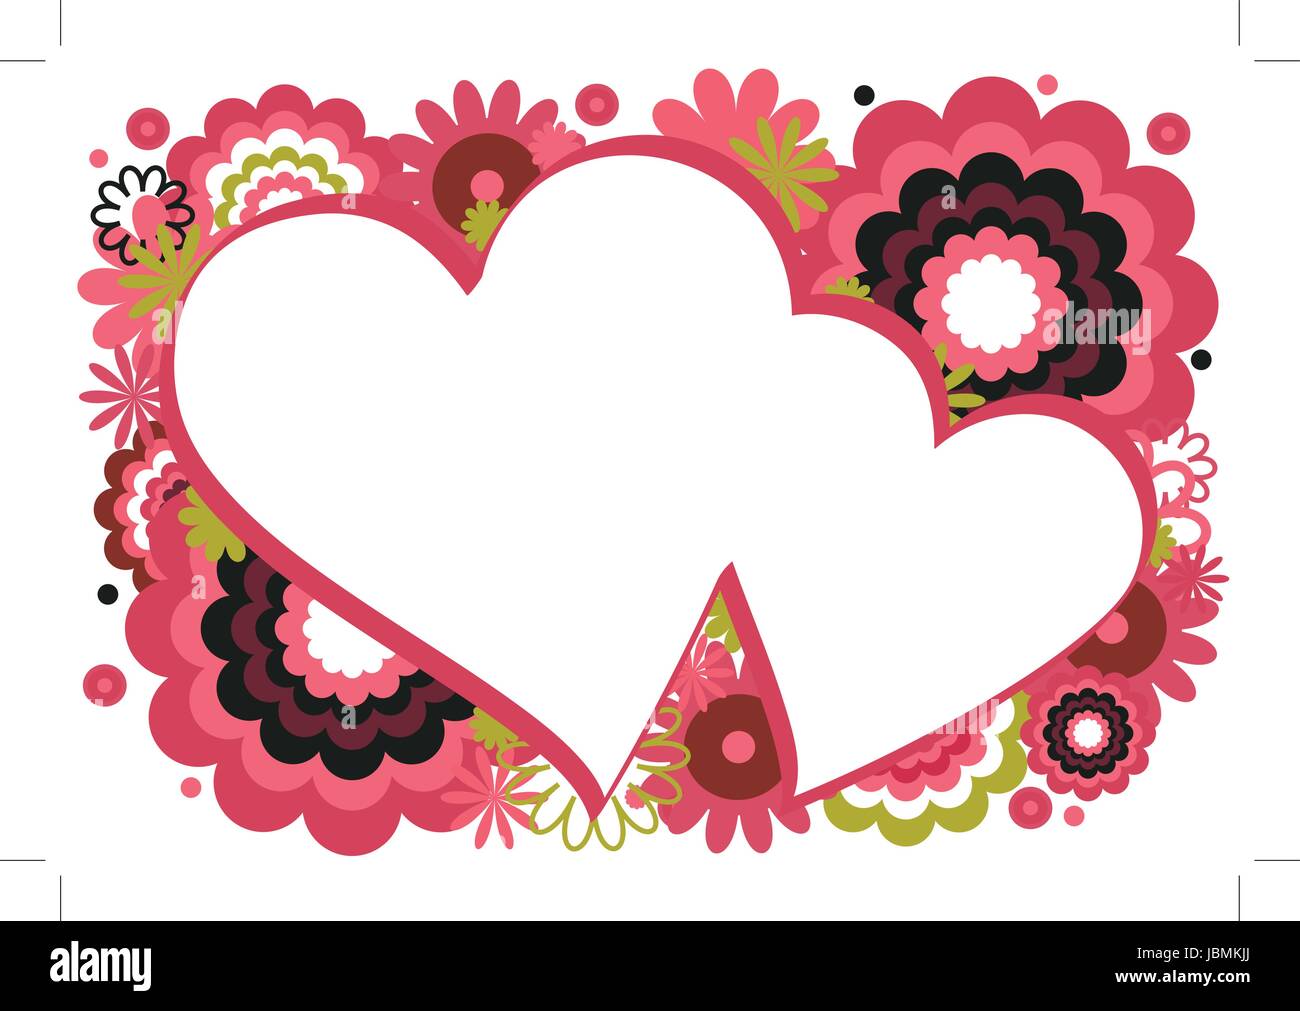 Cornice cuore-Collage di fiori e cerchi caratterised intorno ad un cuore su  uno sfondo bianco Immagine e Vettoriale - Alamy